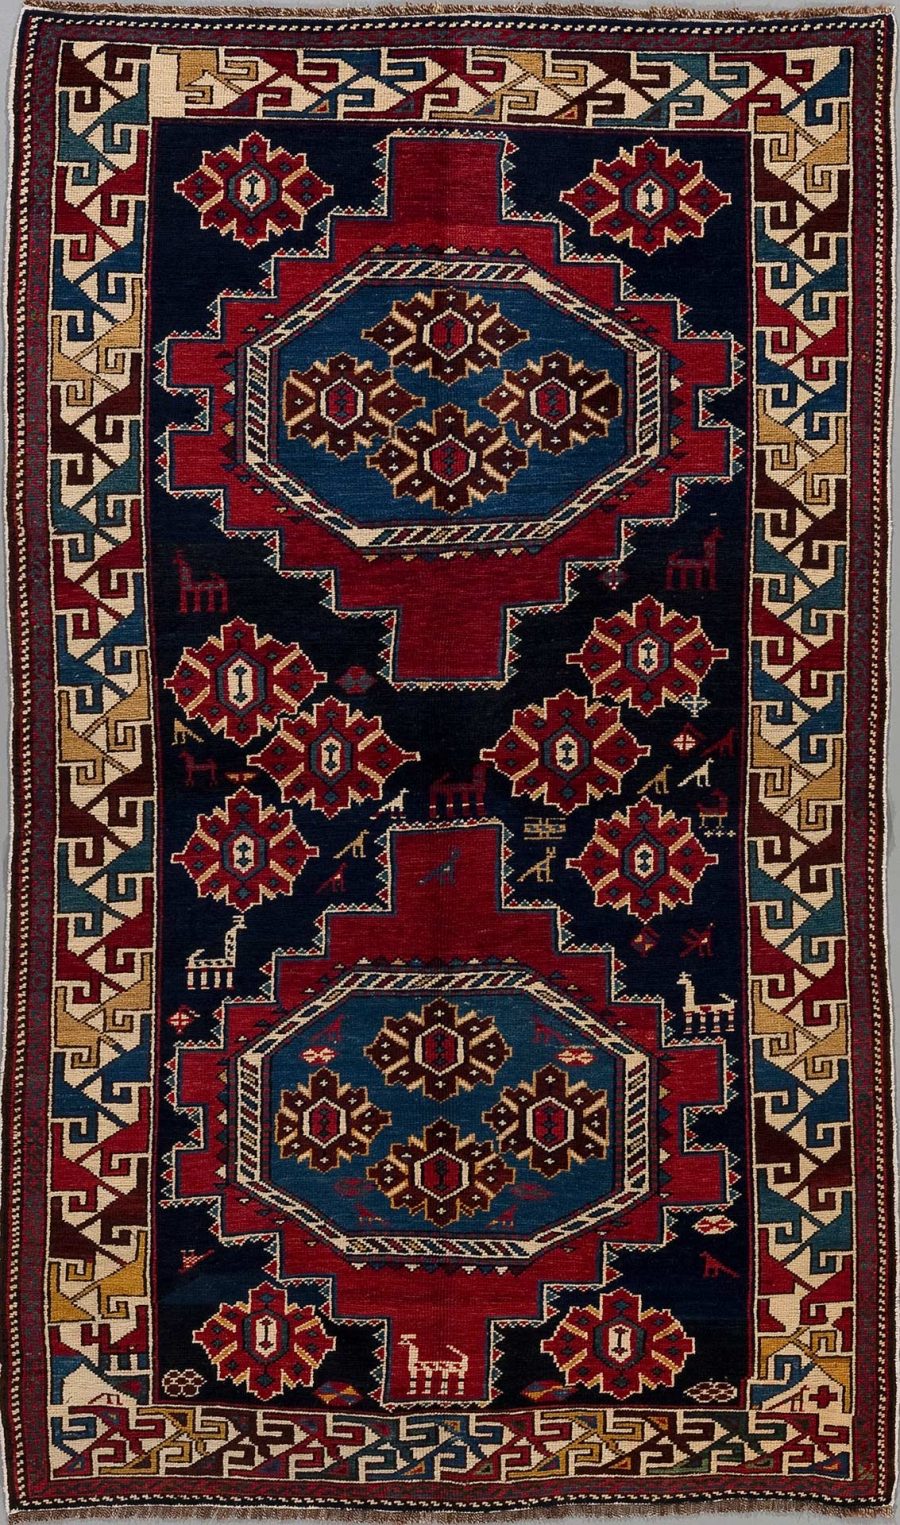 Traditioneller handgeknüpfter Teppich mit zentralem Medaillon-Design, umgeben von geometrischen Mustern und Bordüren in Rot-, Blau-, Beige- und Brauntönen.